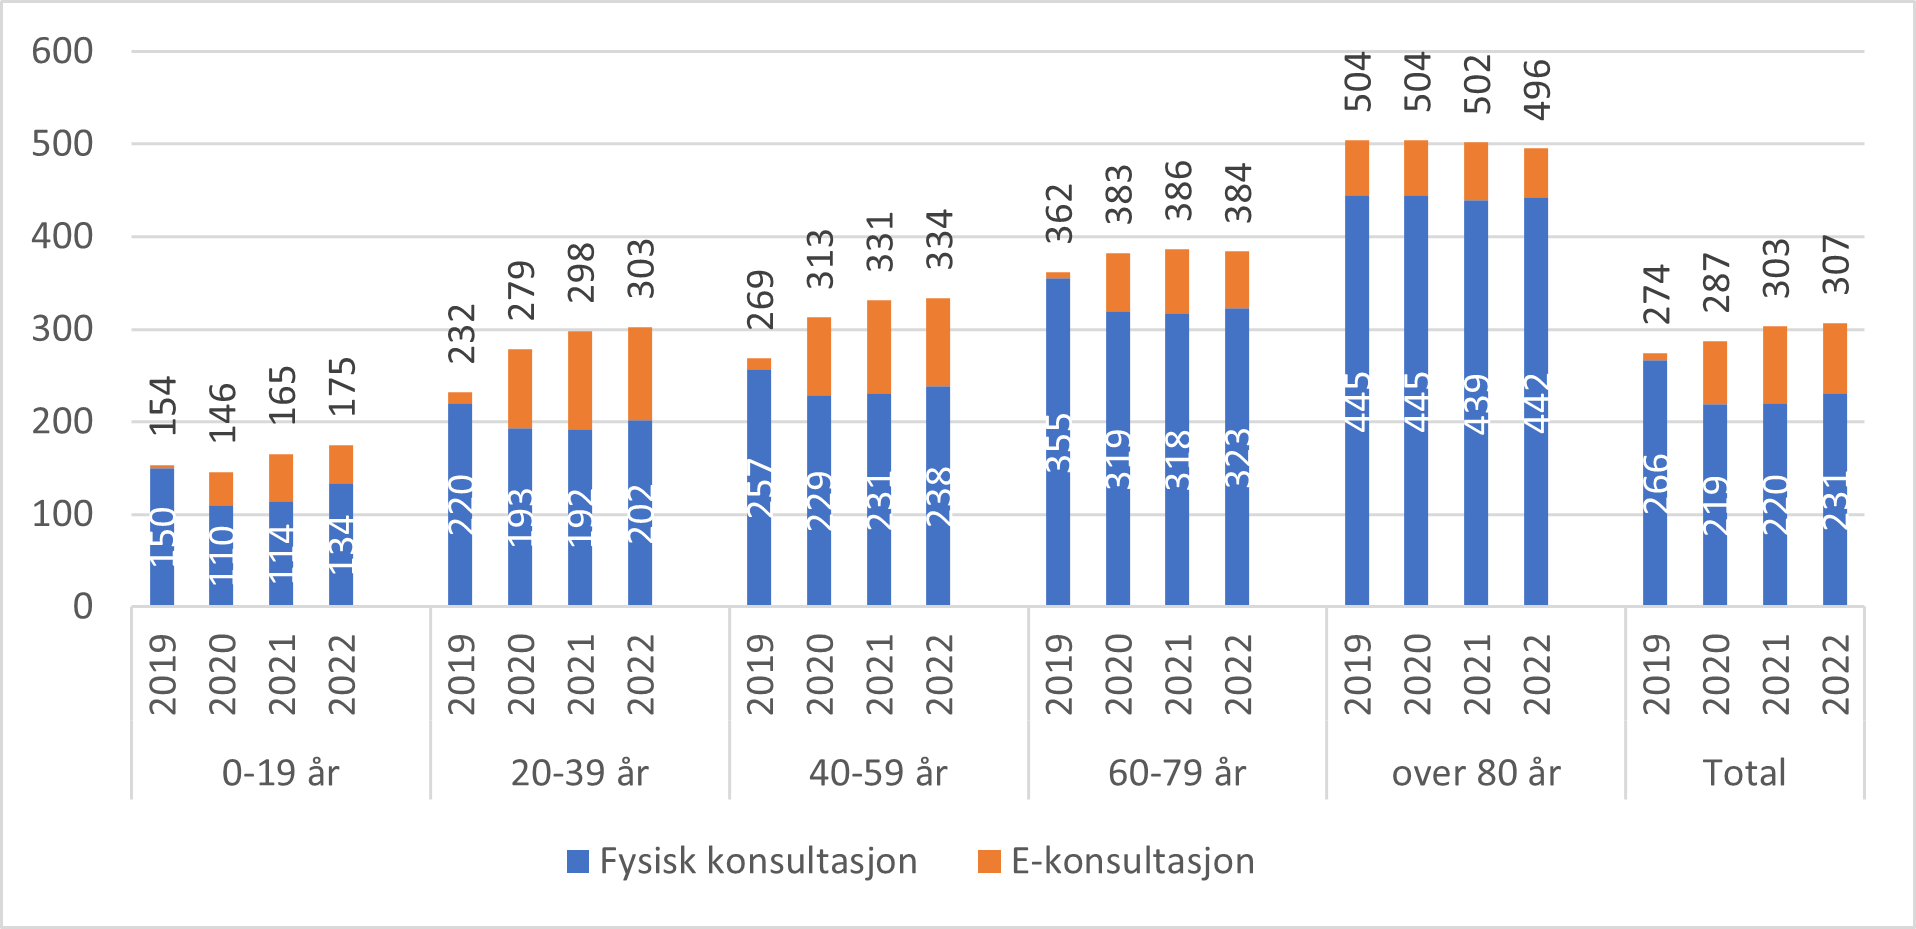 Antall fysiske konsultasjoner og e-konsultasjoner (inklusive telefonkonsultasjoner) hos fastlege per 100 innbygger for aldersgrupper og nasjonalt, 2019-2022